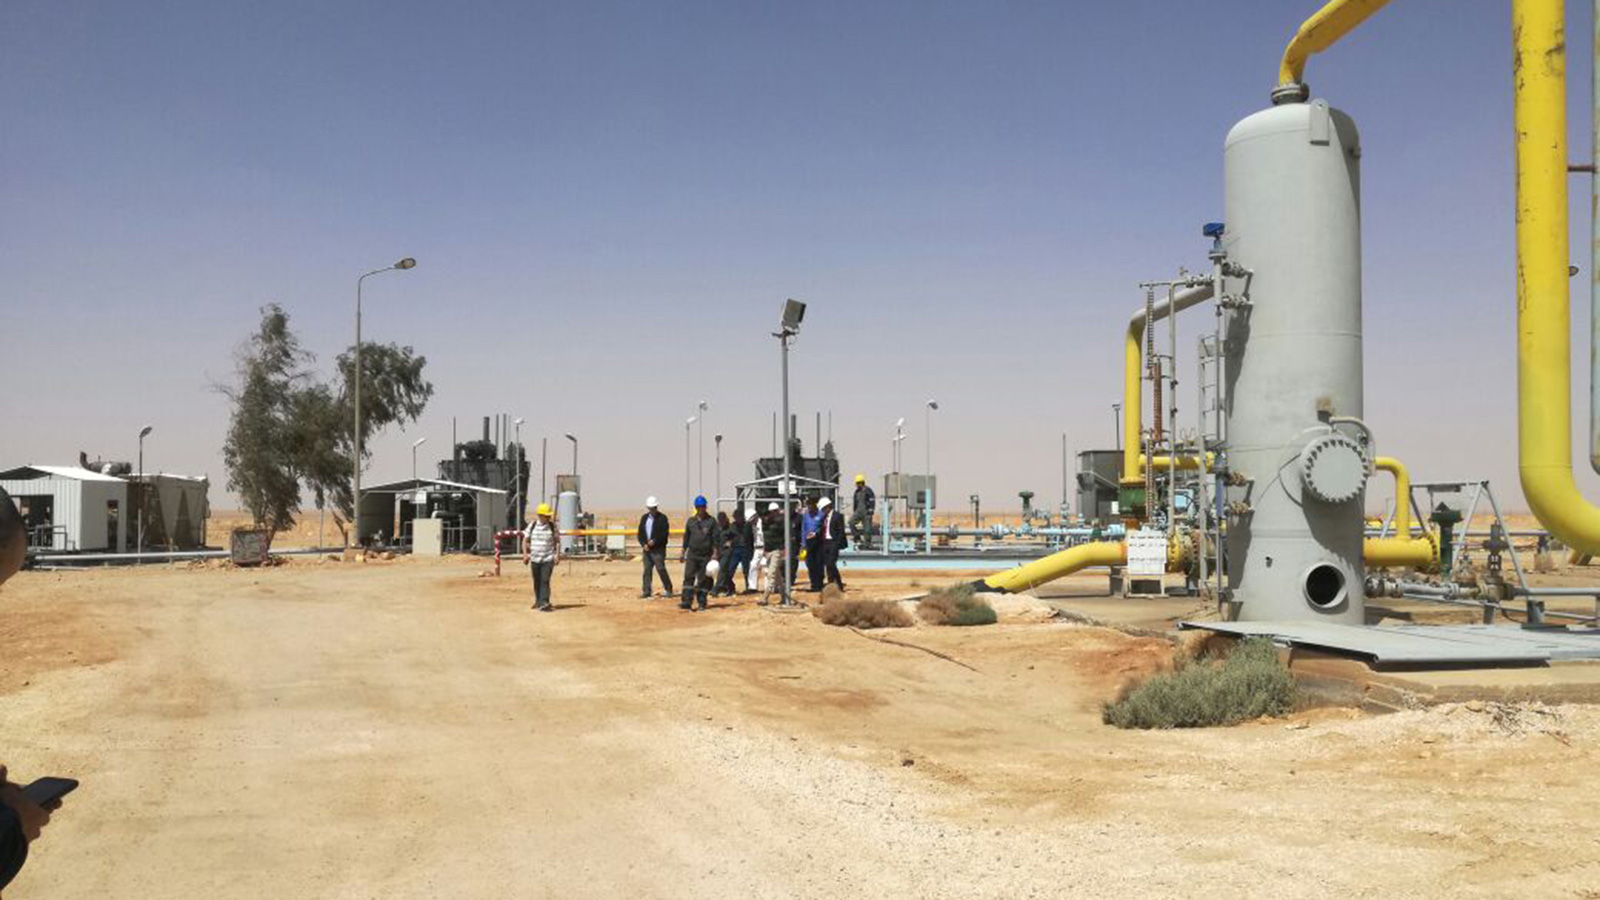 ‪آبار استخراج الغاز من موقع حقل الريشة شرقي الأردن (وكالات محلية)‬ آبار استخراج الغاز من موقع حقل الريشة شرقي الأردن (وكالات محلية) 